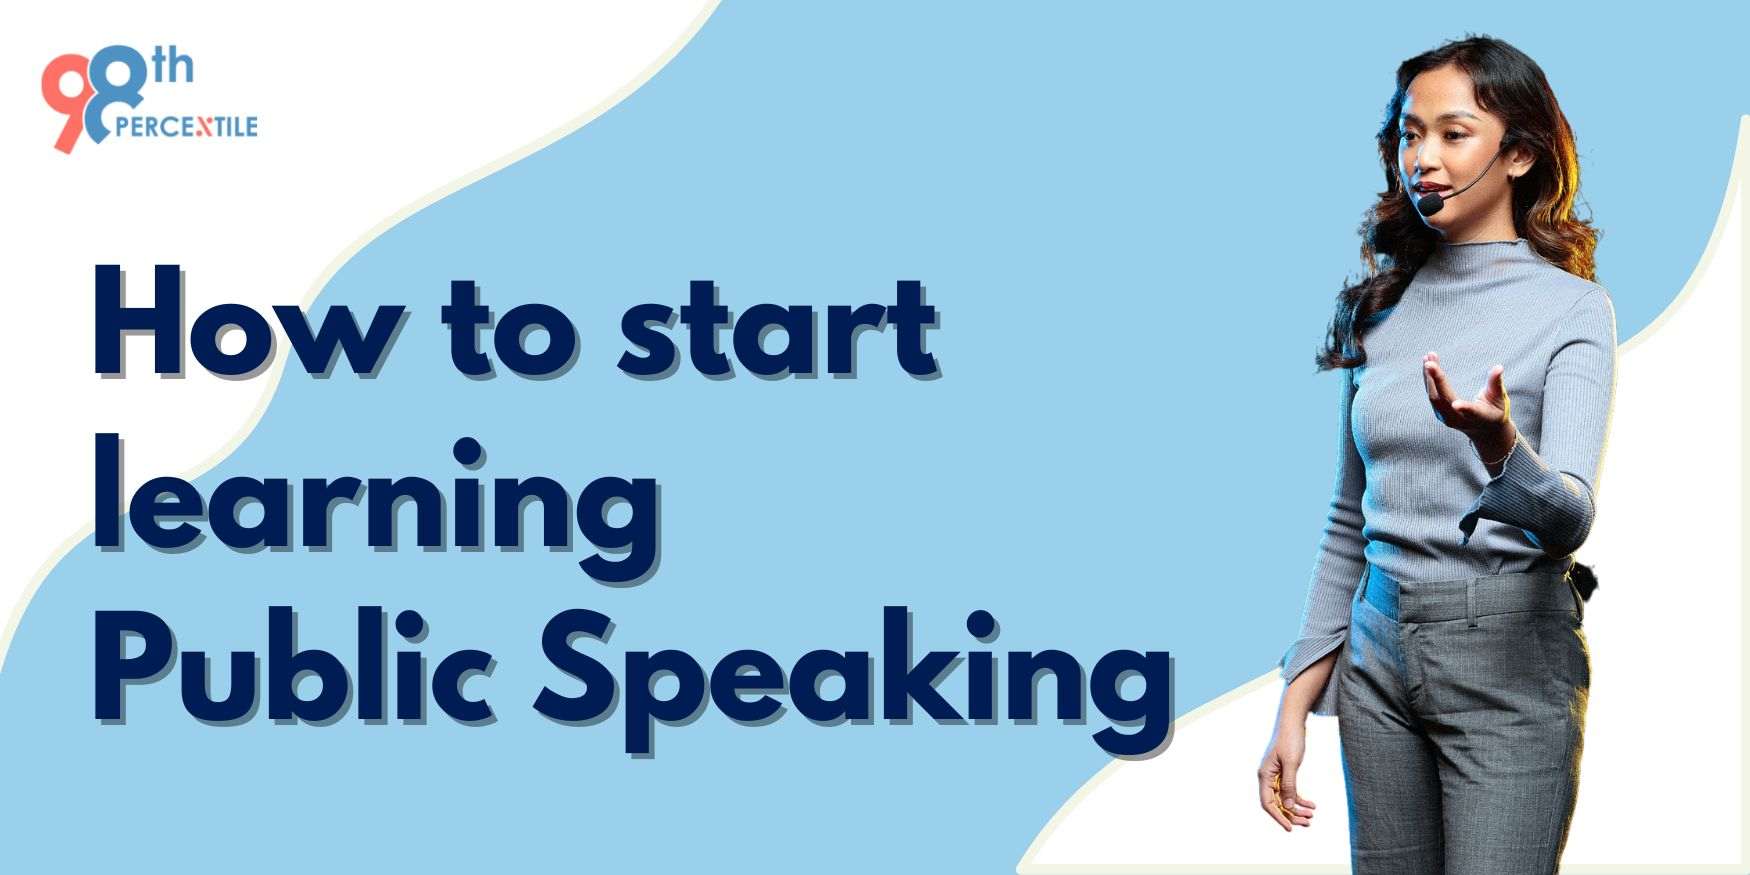 How do I start learning public speaking